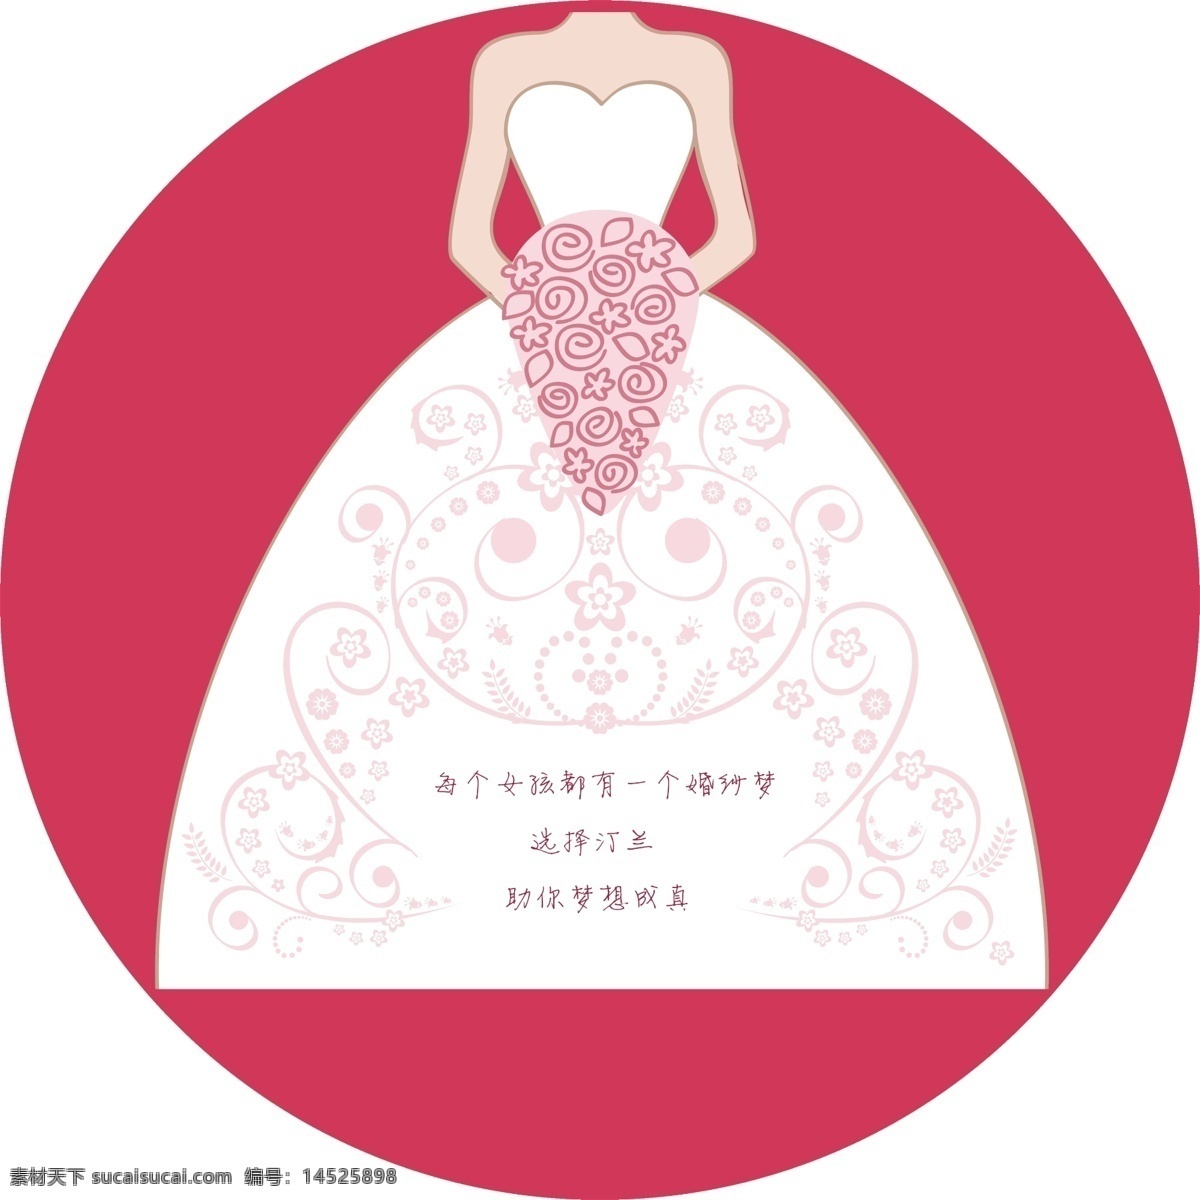 形象墙圆牌 圆形 婚纱 logo 标志 汀兰婚纱 卡通新娘 梅红色 背景 卡通人物 白色 花纹 花边